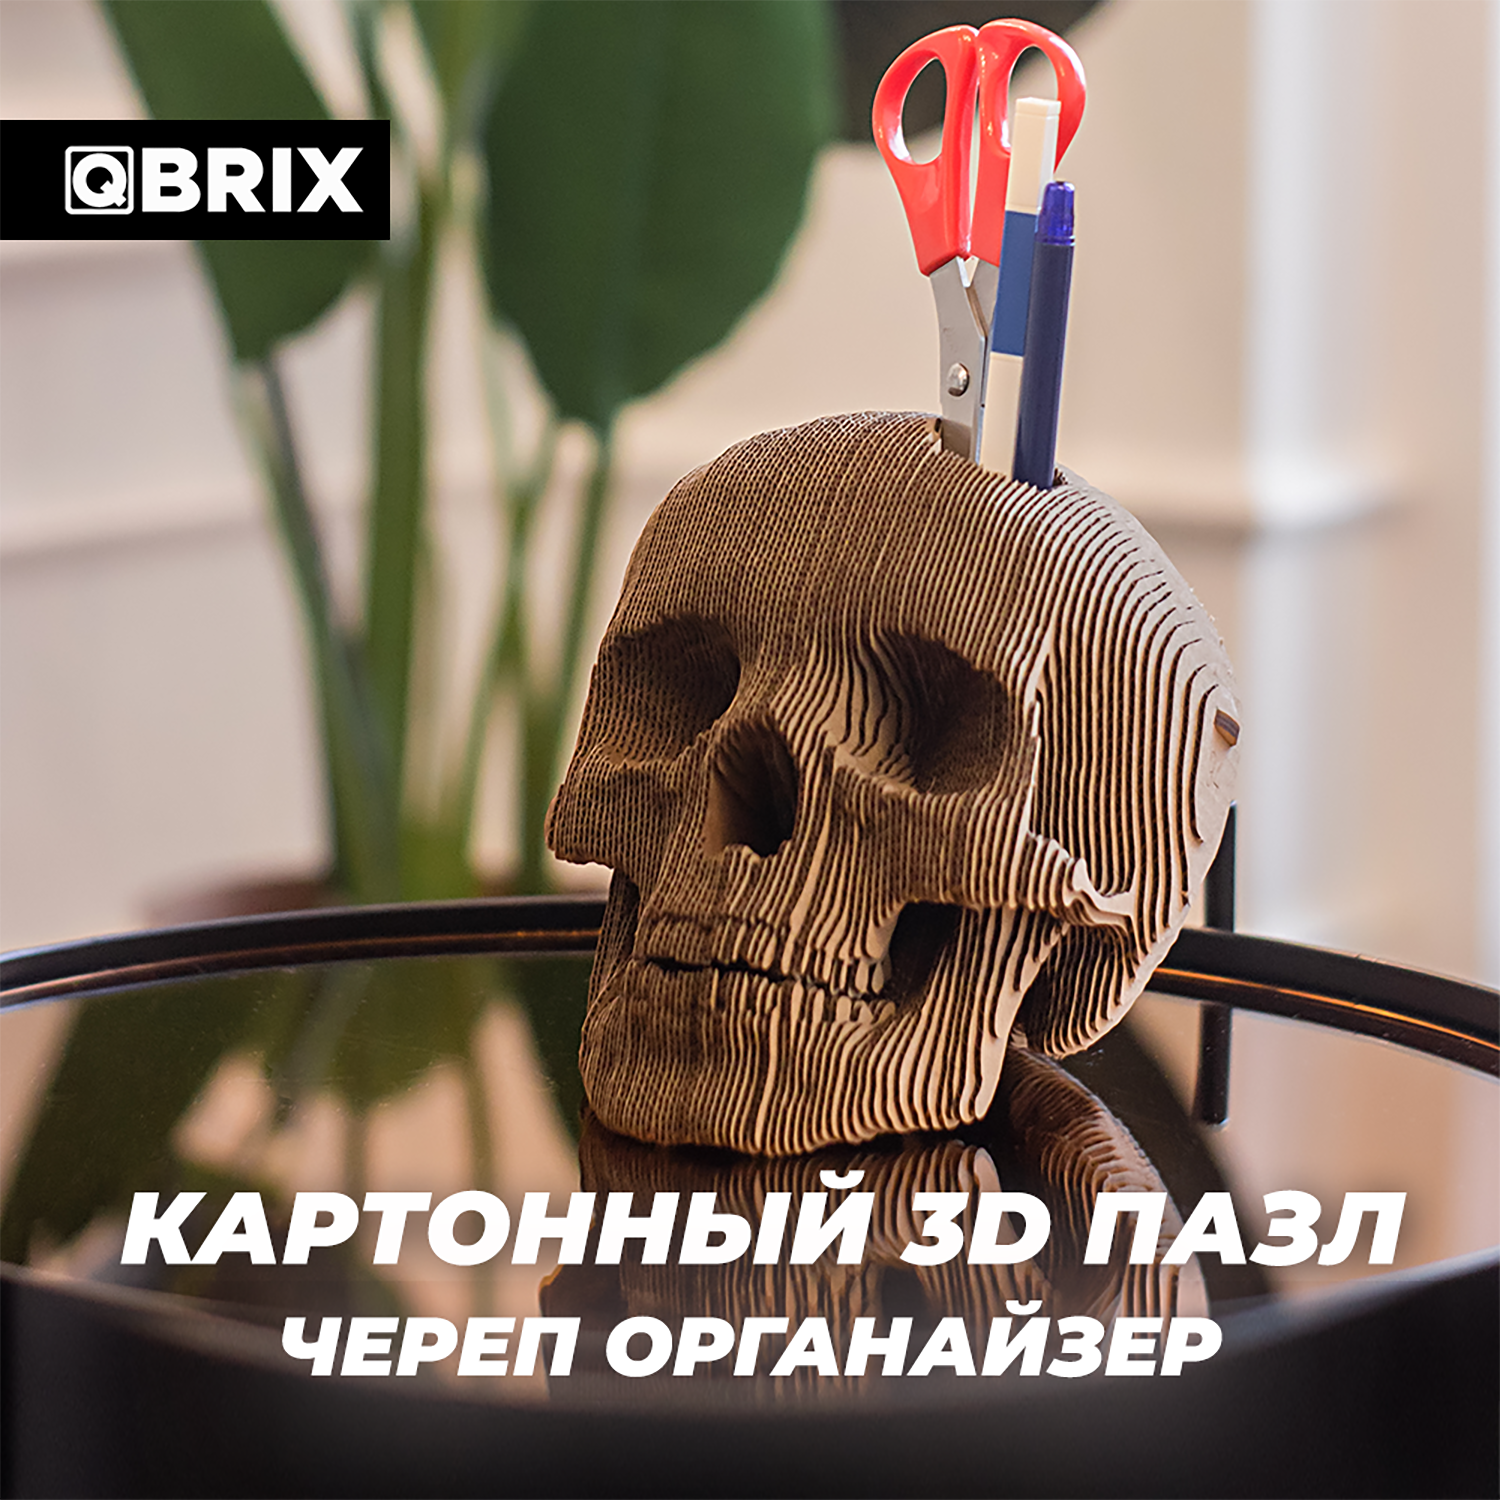 Конструктор QBRIX 3D картонный Череп органайзер 20004 20004 - фото 4